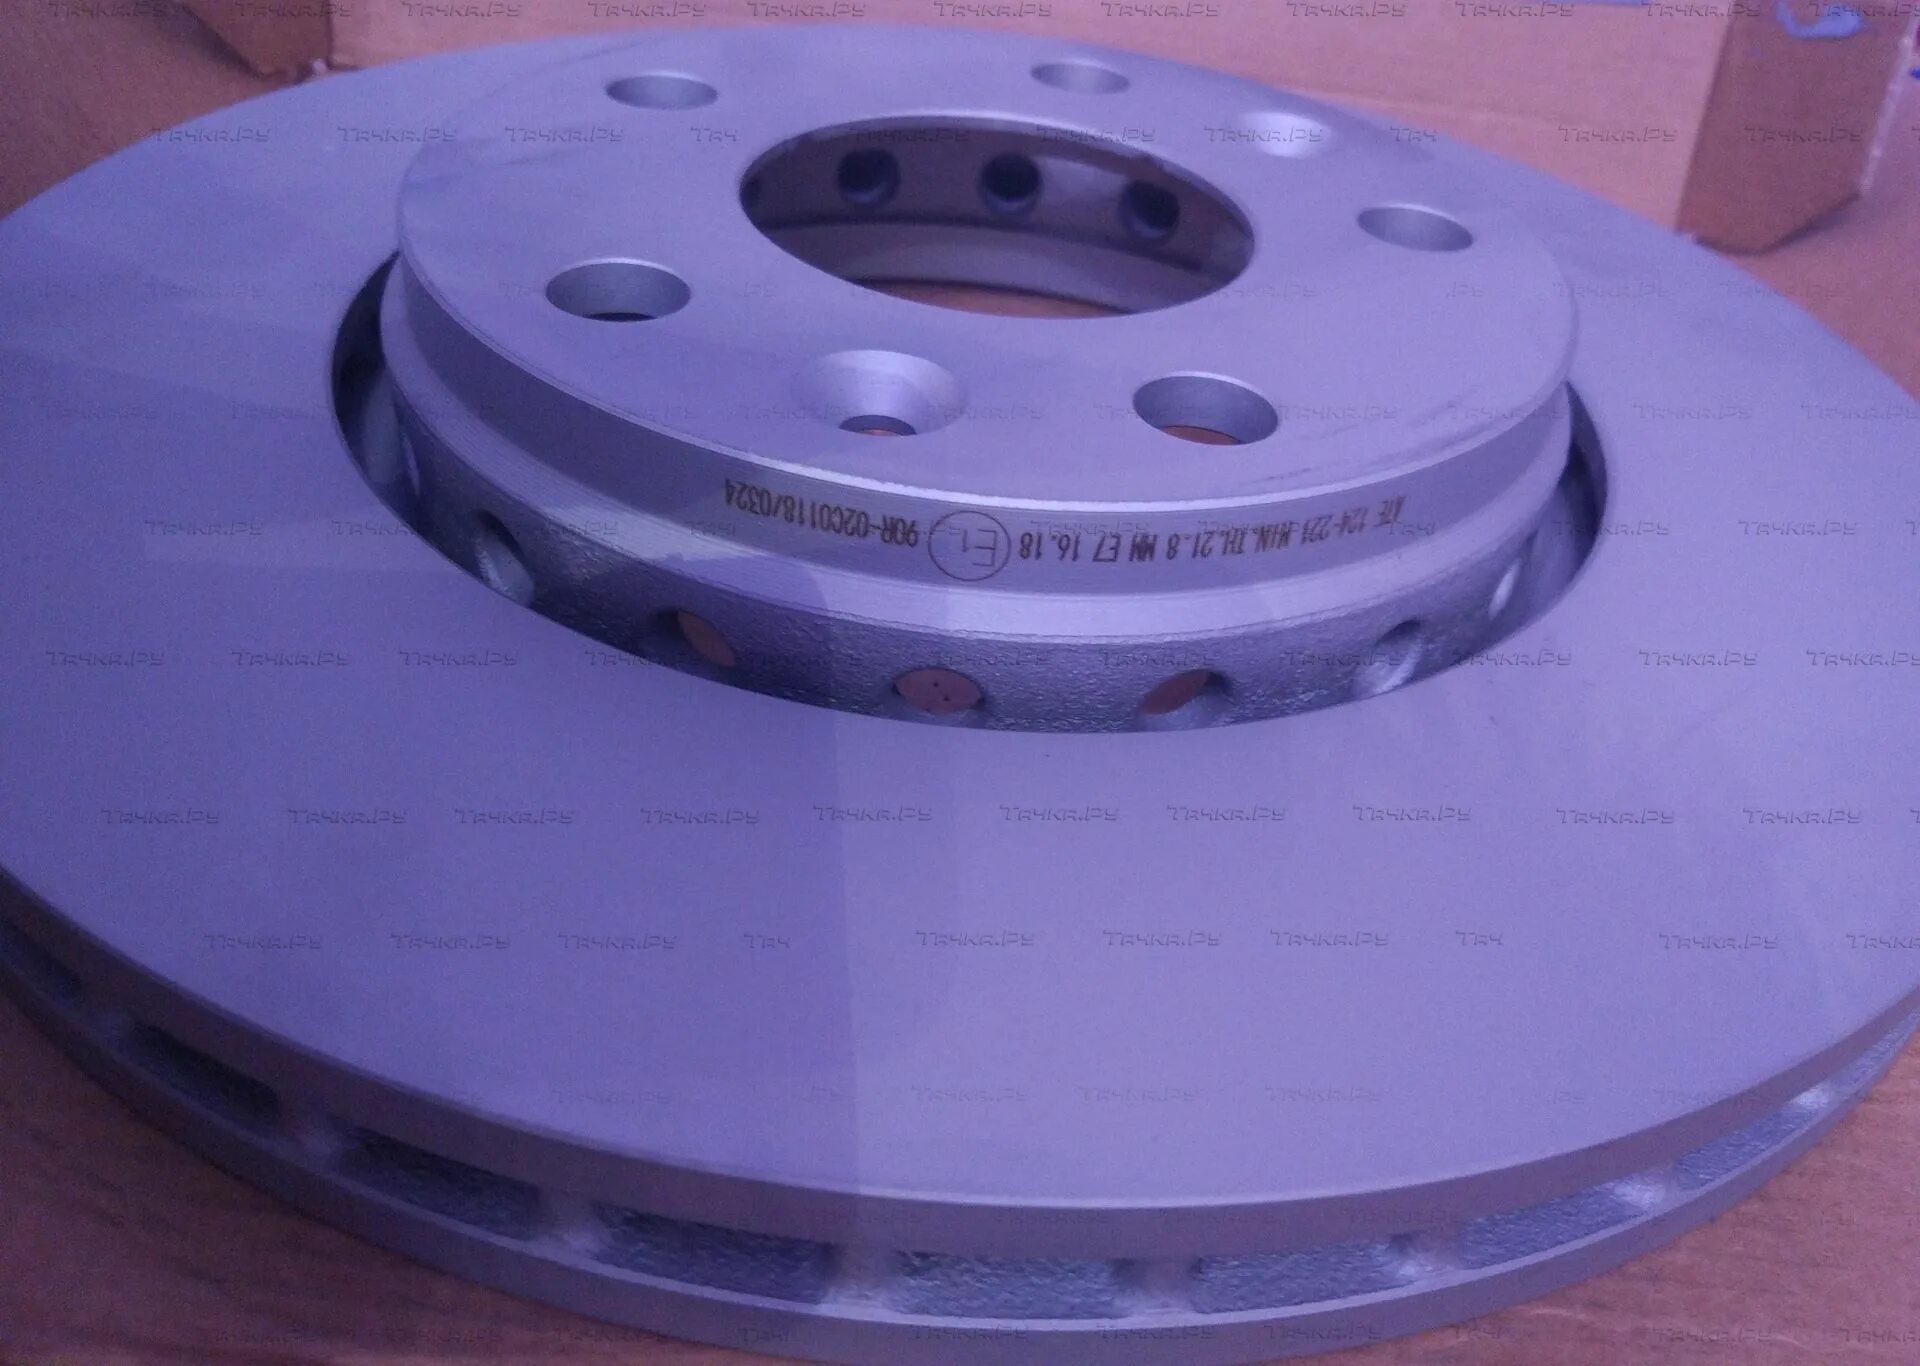 Диск тормозной передний дастер 2.0 4х4. Renault Duster (2g) диски тормозные. Тормозные диски Рено Дастер 2.0. Ate 24.0124-0221.1 диск тормозной вентилируемый. Тормозные диски Renault Duster 1.6.